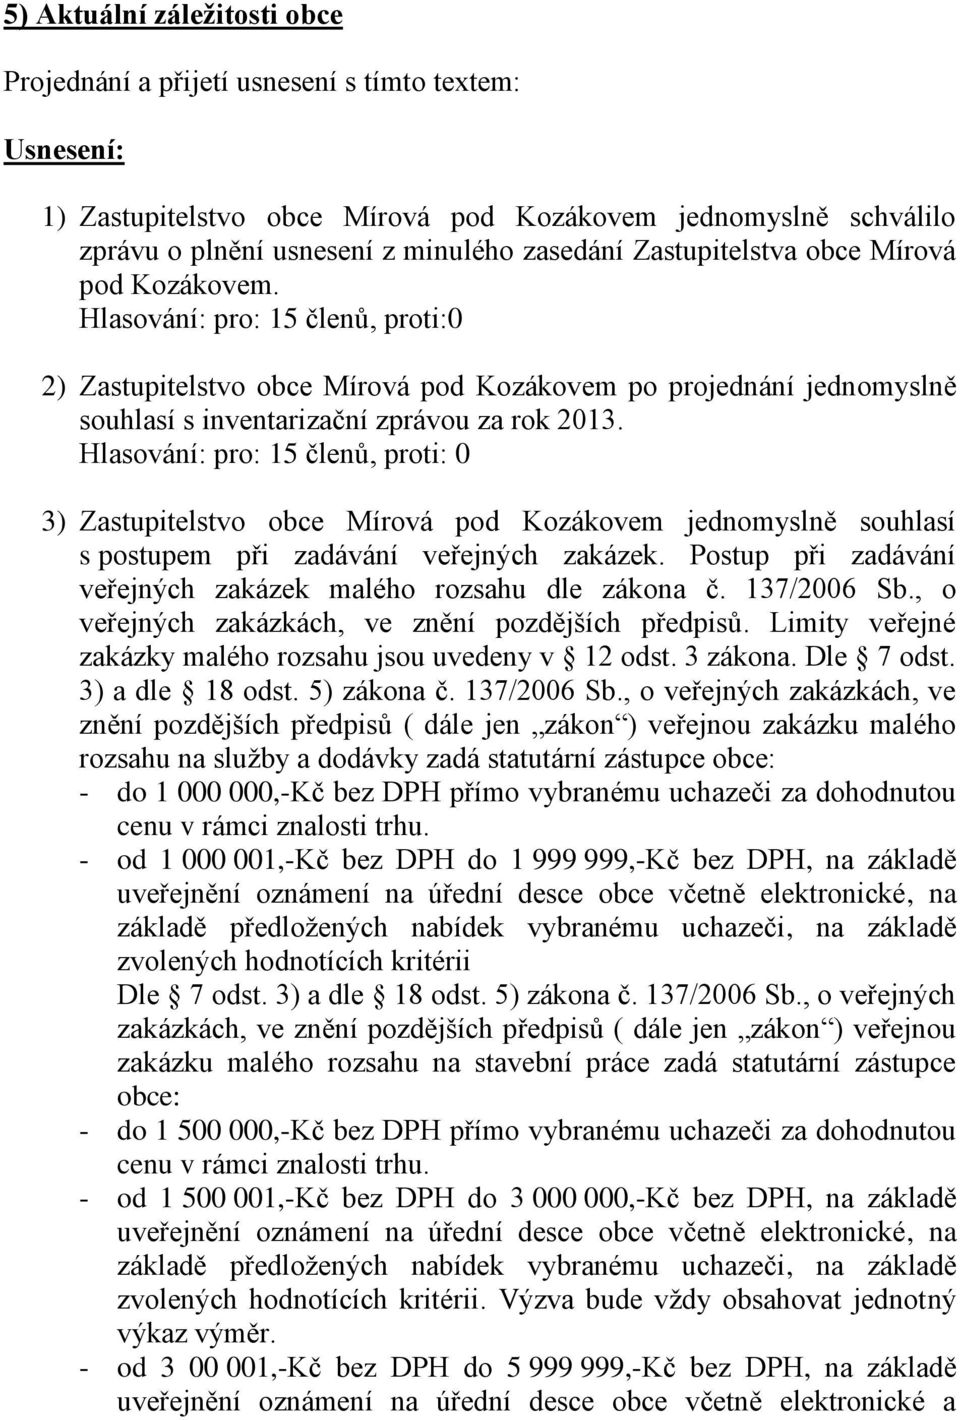 3) Zastupitelstvo obce Mírová pod Kozákovem jednomyslně souhlasí s postupem při zadávání veřejných zakázek. Postup při zadávání veřejných zakázek malého rozsahu dle zákona č. 137/2006 Sb.